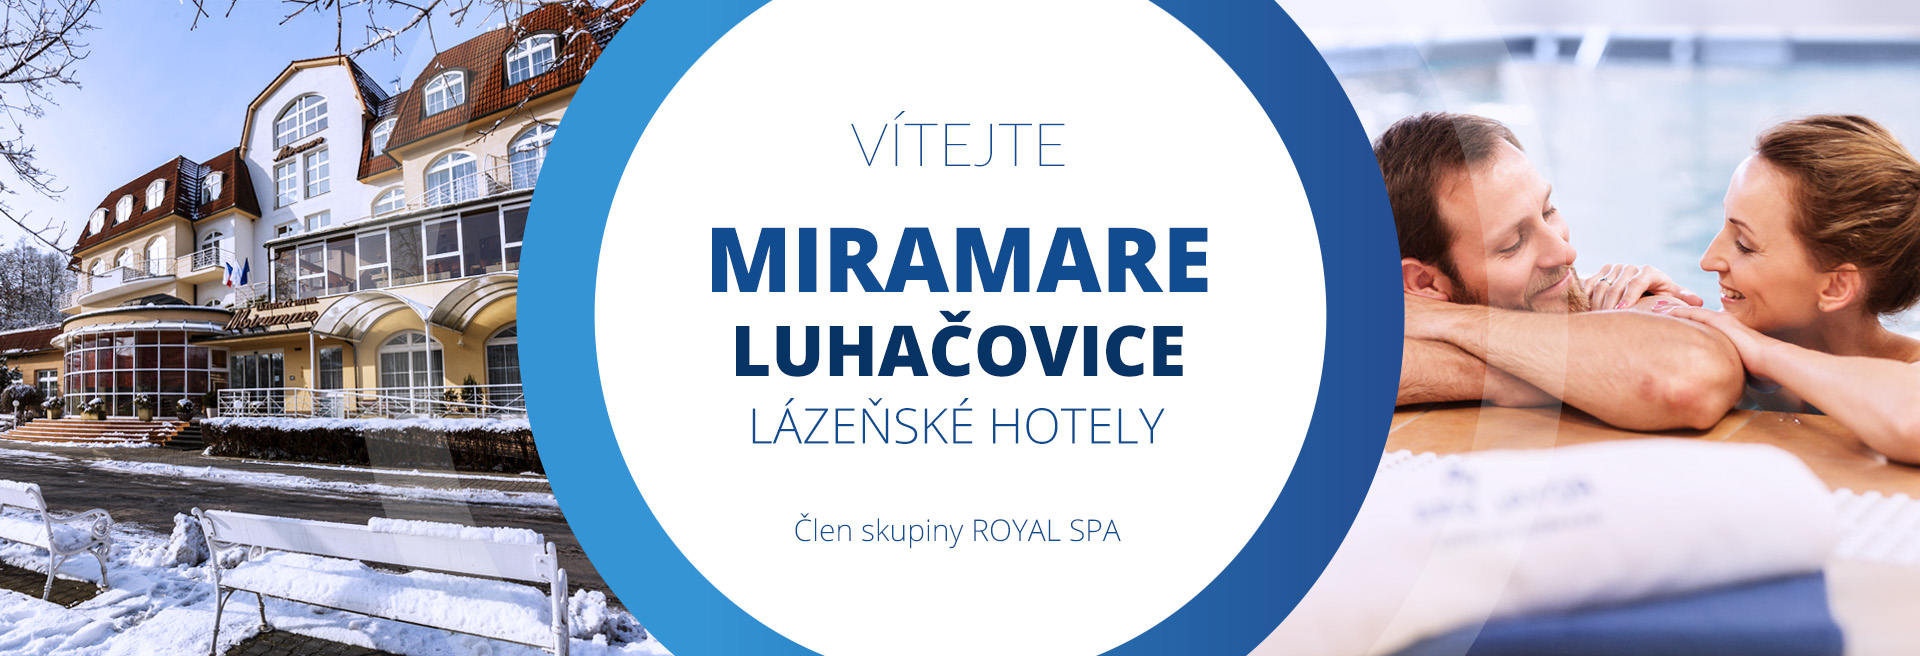 Ubytování a hotely - lázně MIRAMARE Luhačovice